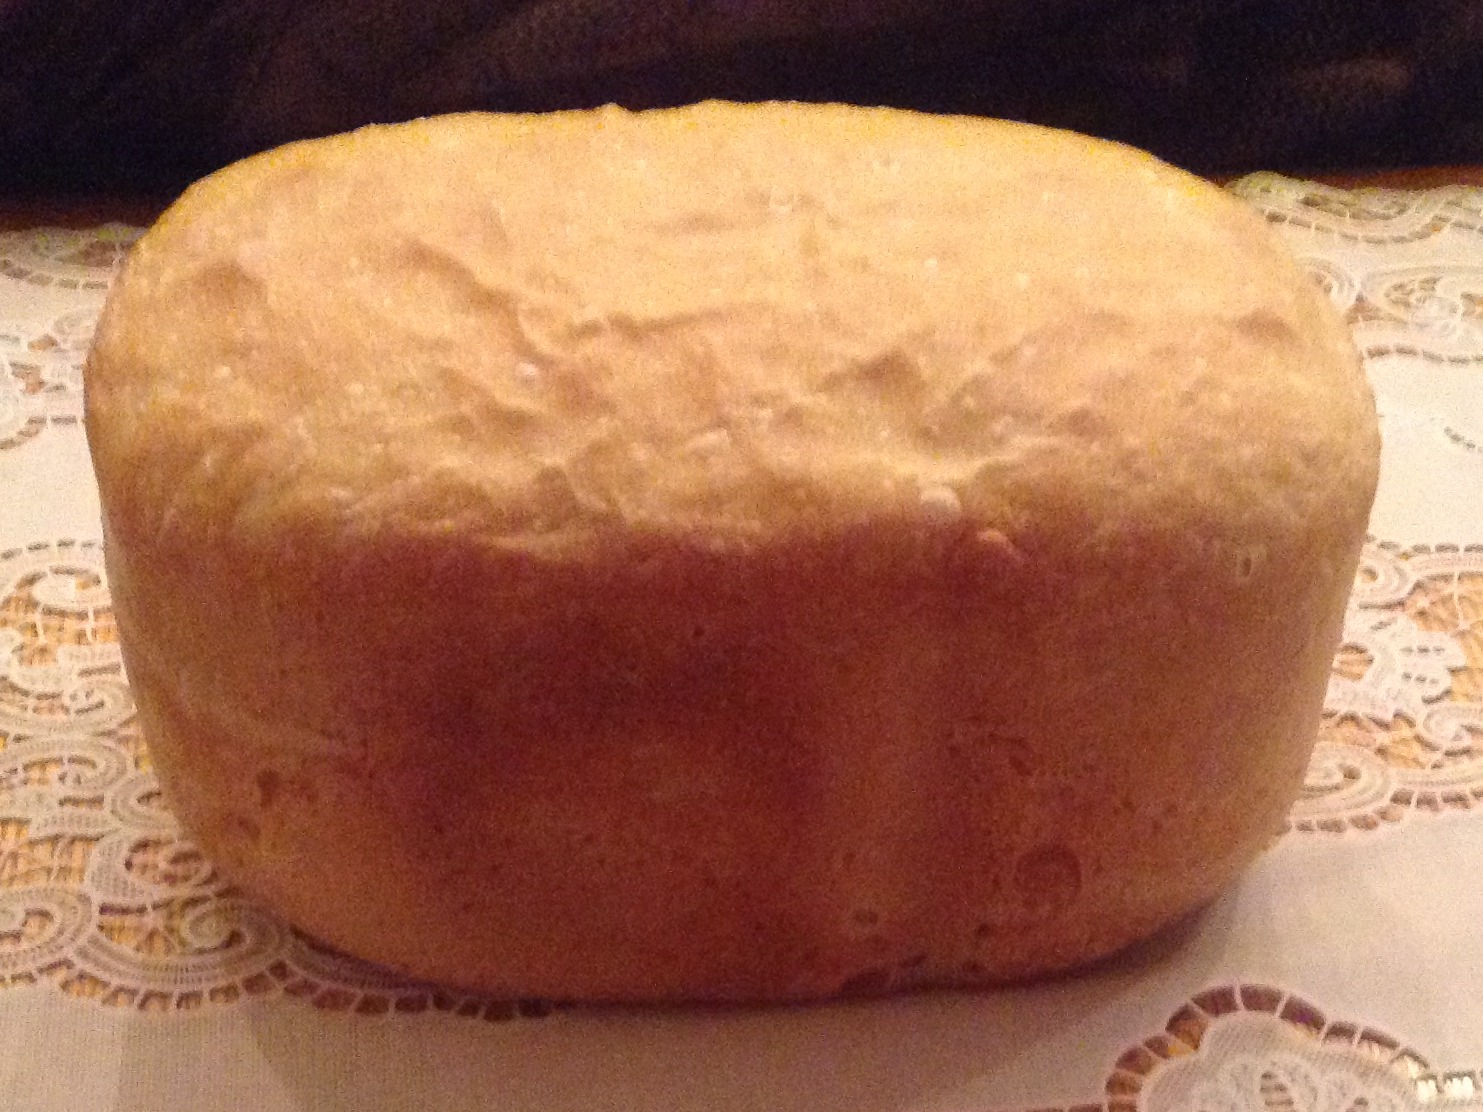 Молочный хлеб в хлебопечке Панасоник. Пирожки в хлебопечке. Рецепт кулича в хлебопечке Панасоник 2501. Хлеб в хлебопечке Филипс рецепты простые и вкусные. Рецепт хлеба панасоник 2501